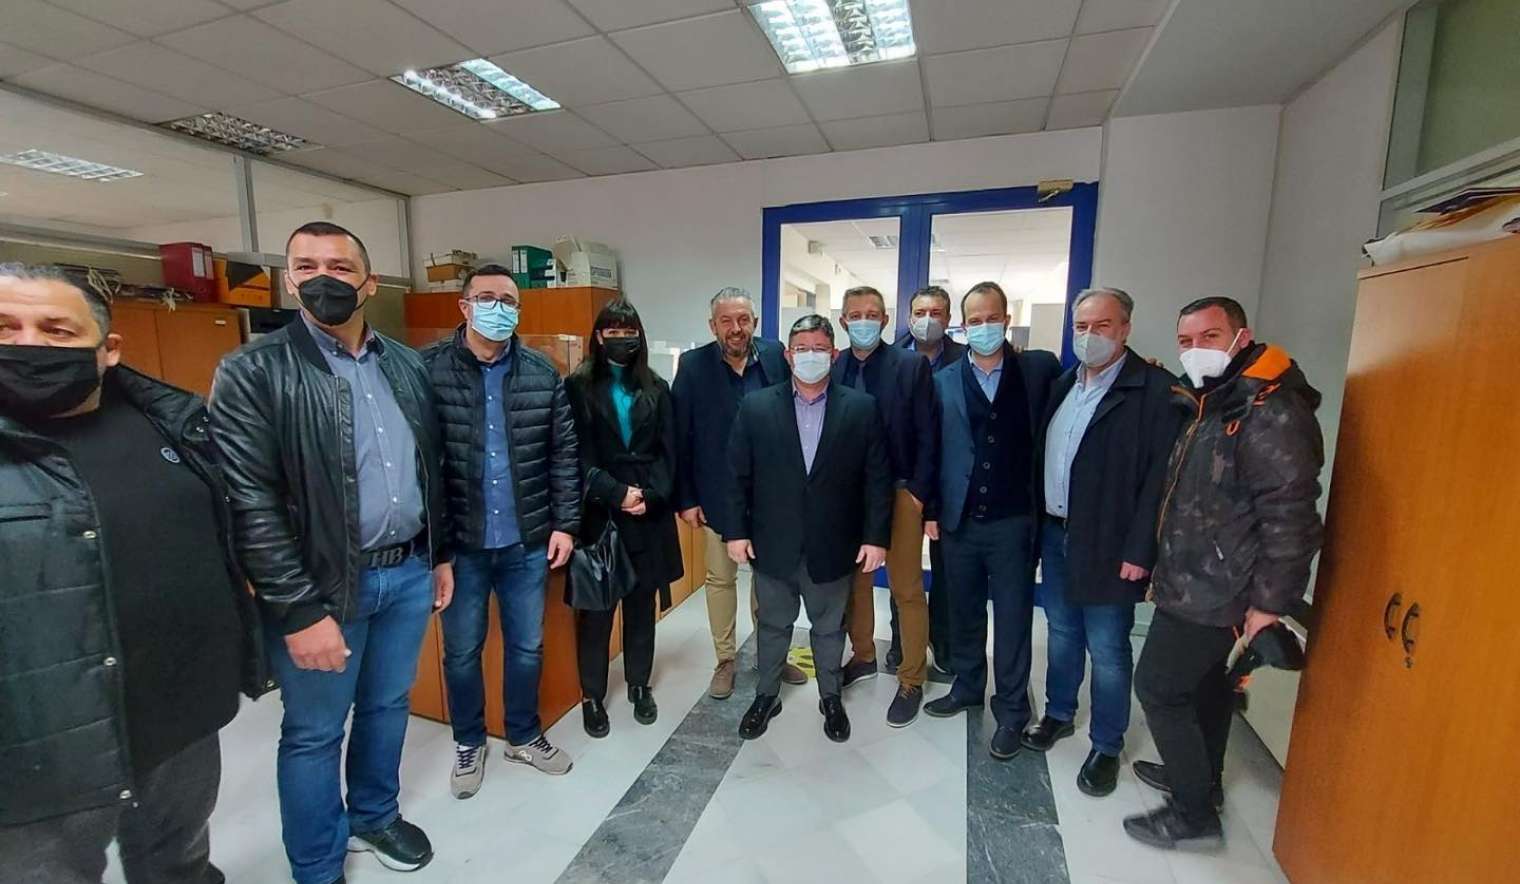 Ευχές με τους εργαζόμενους του Δήμου αντάλλαξαν ο Δήμαρχος Αχαρνών και μέλη της Δημοτικής Αρχής